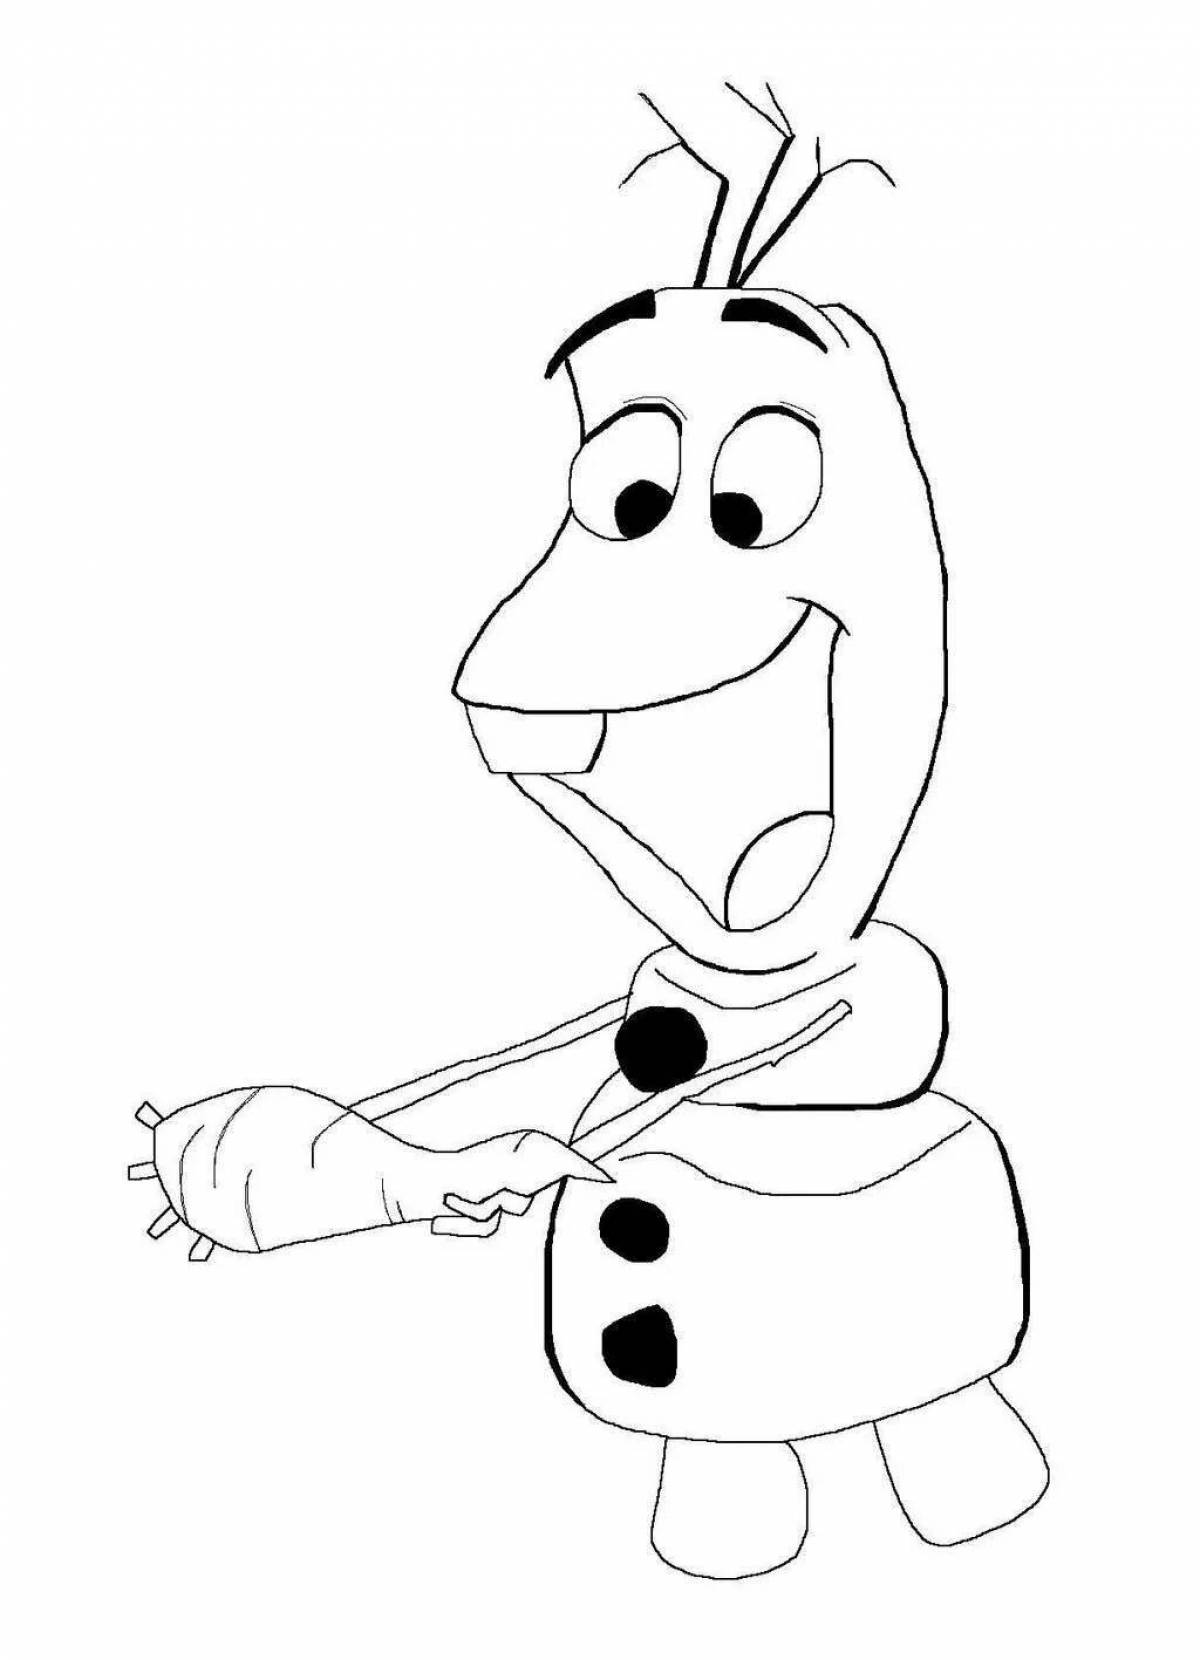 Olaf the snowman #1